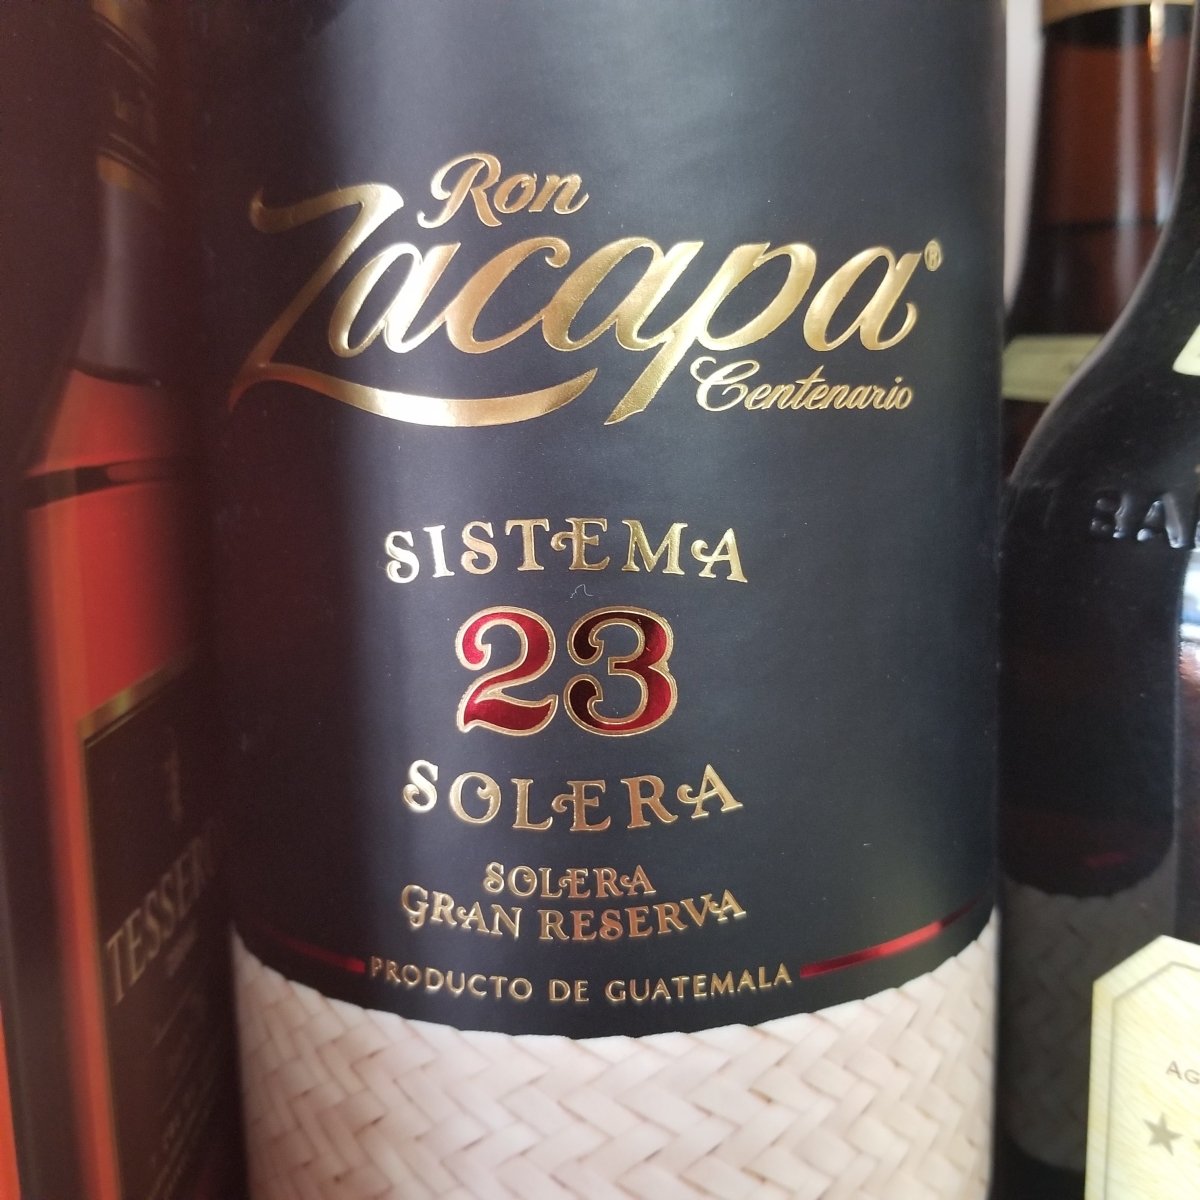 Ron Zacapa Centenario Sistem Solera 23 Rum 750ml